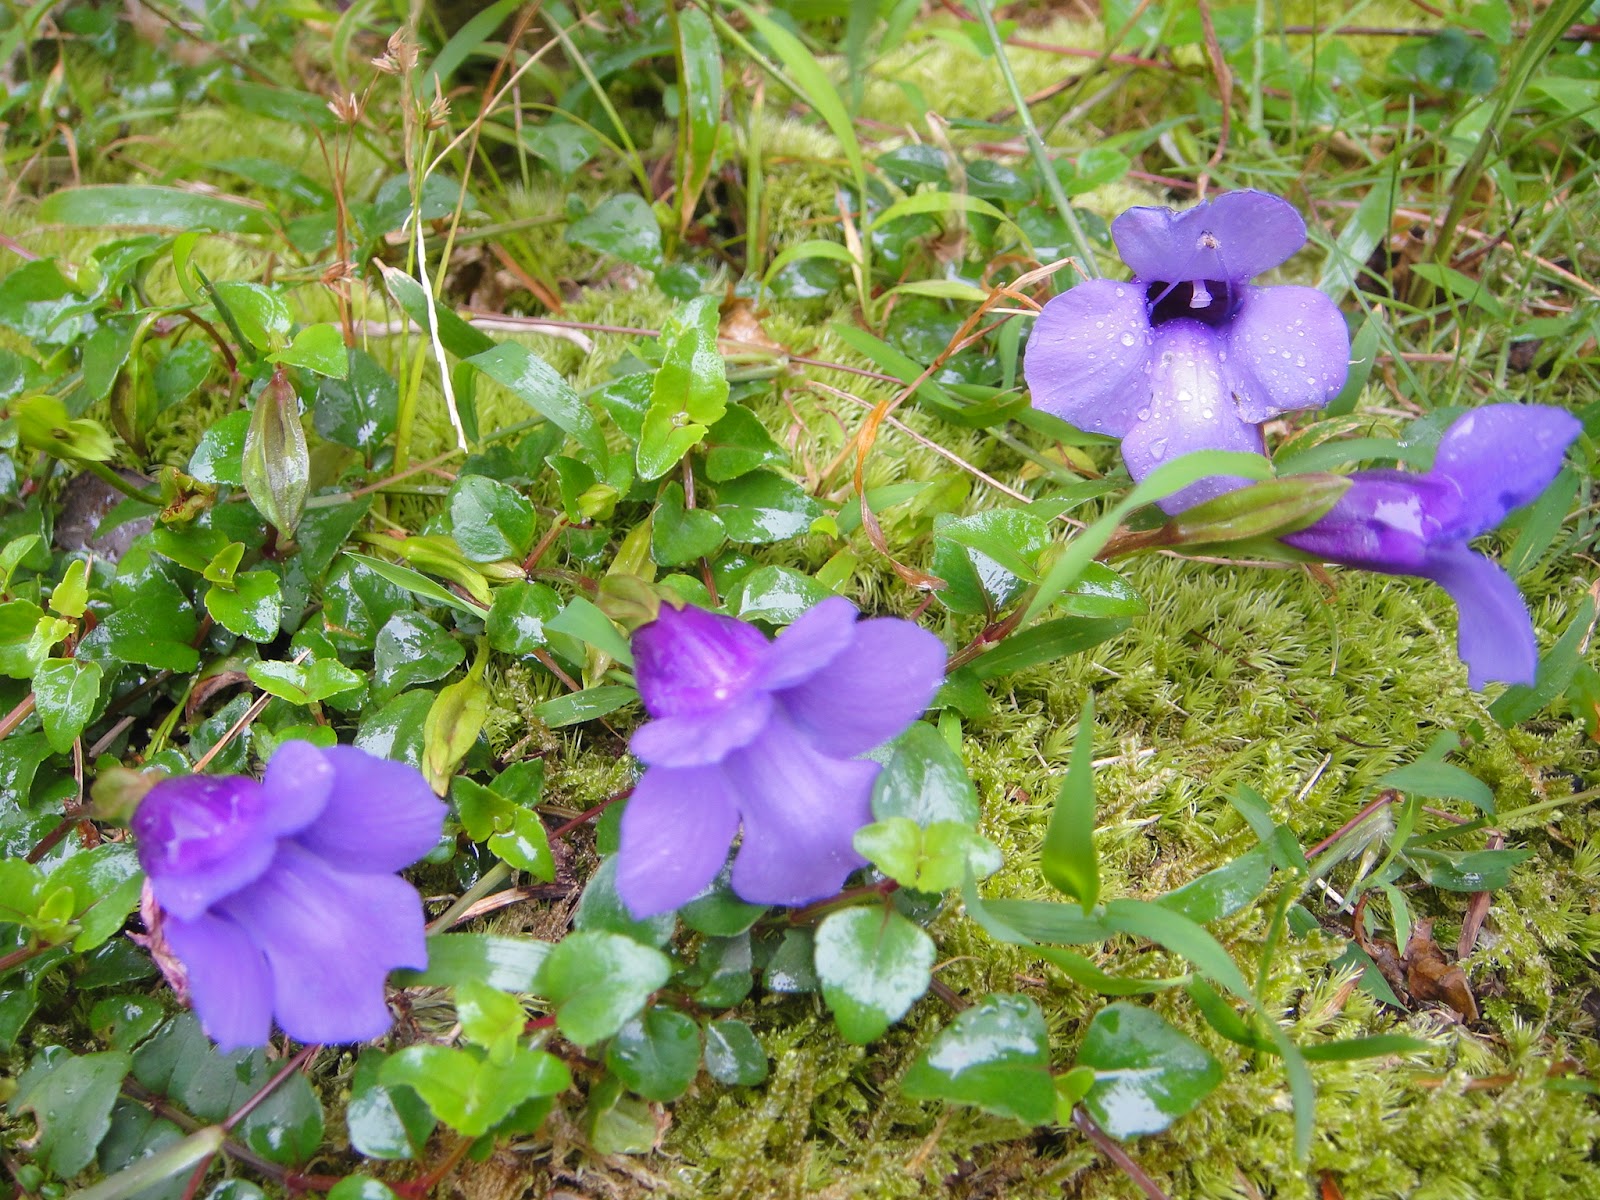 DWAN雲之端: 倒地蜈蚣--屬玄參科，艷麗的藍紫色花朵，倒在地上匍匐生長， 像蜈蚣在地上爬之外， 它喜陰溼的特性， 也跟蜈蚣相仿，總之這樣惹 ...